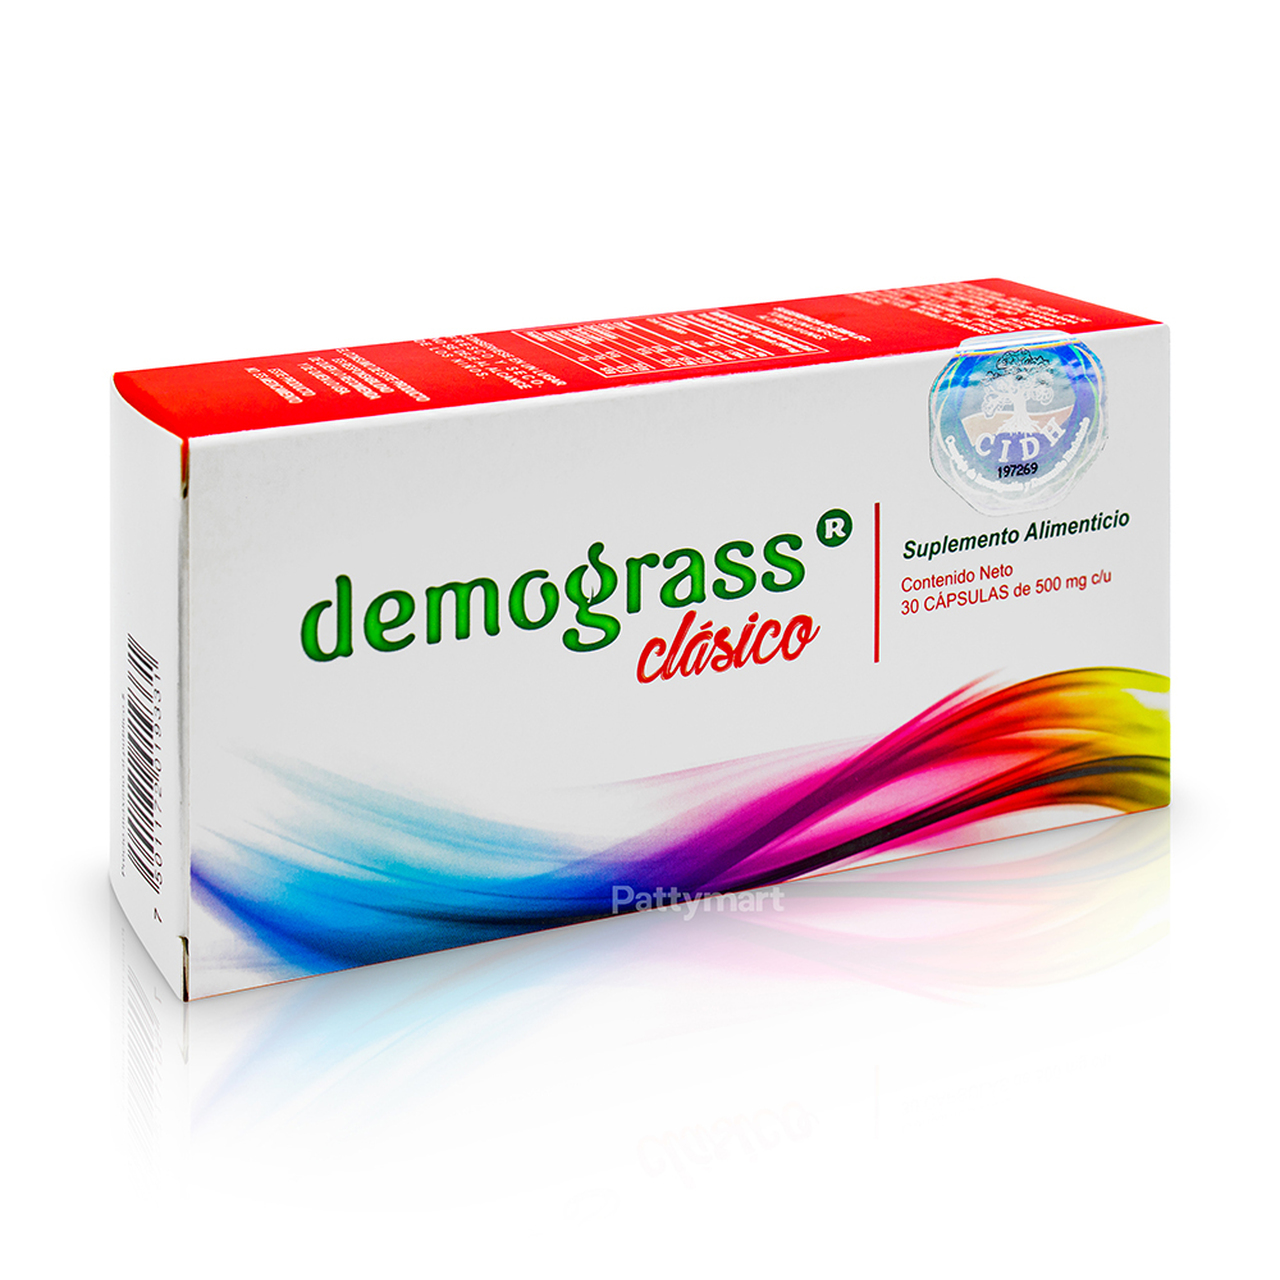 Demograss: ¿Qué es y para qué sirve?